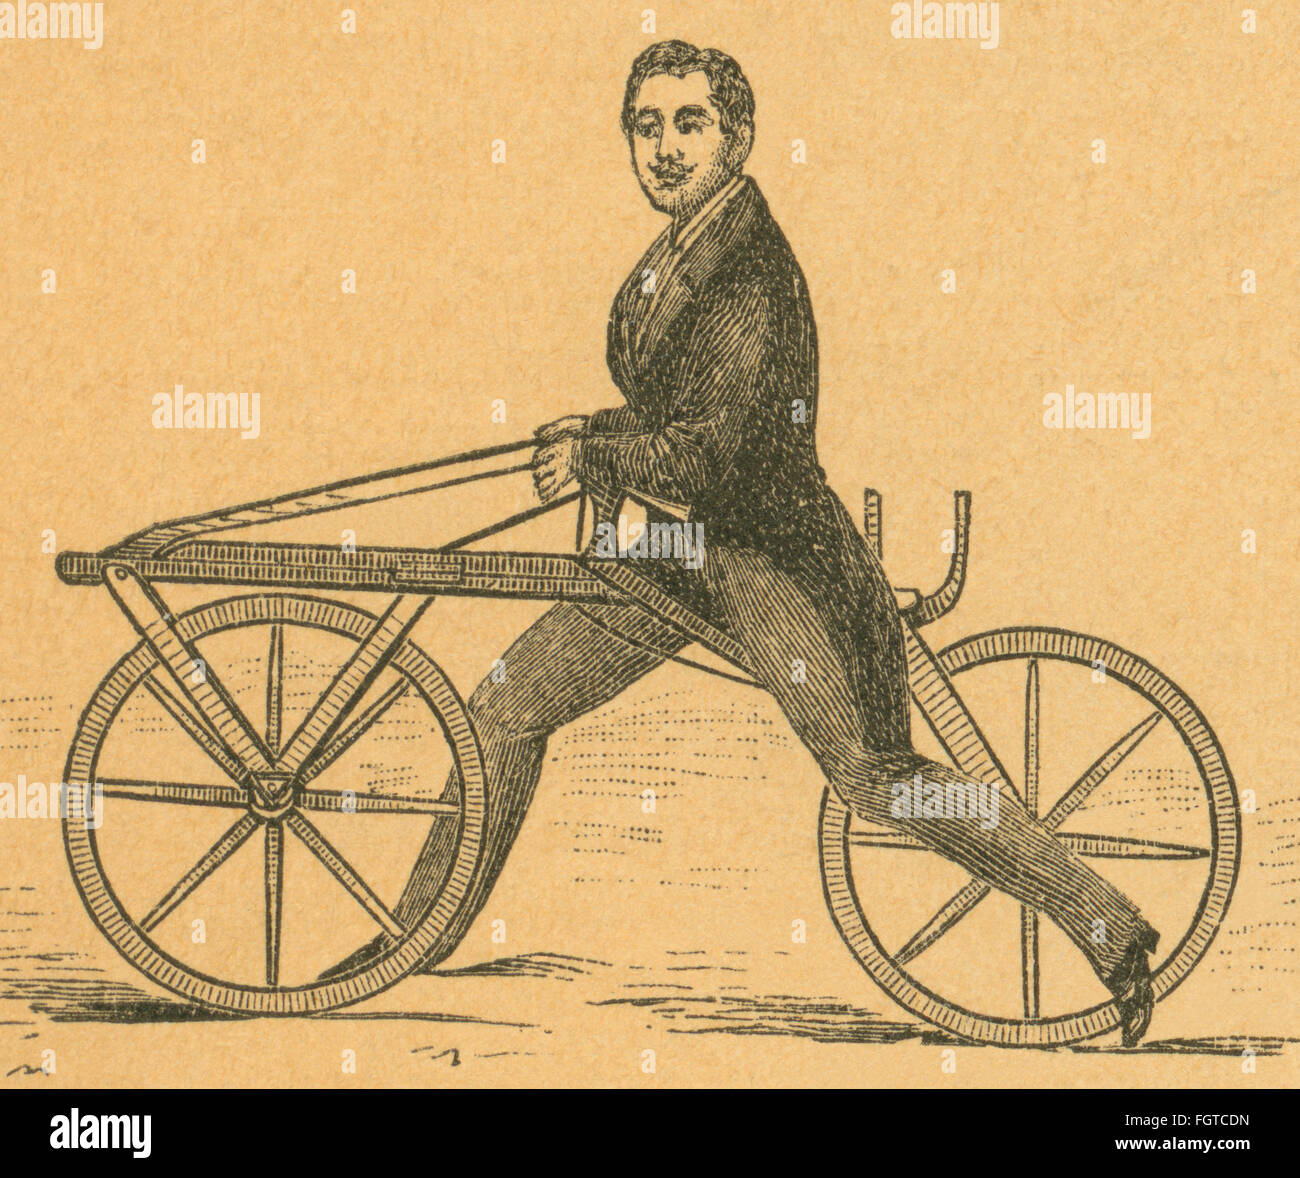 Transport / Transport, Fahrrad, Draisine von Karl Baron von Drais, 1817,  Holzstich aus der Zeitschrift Gartenlaube, 1886.,  Zusatz-Rechte-Freigaben-nicht vorhanden Stockfotografie - Alamy